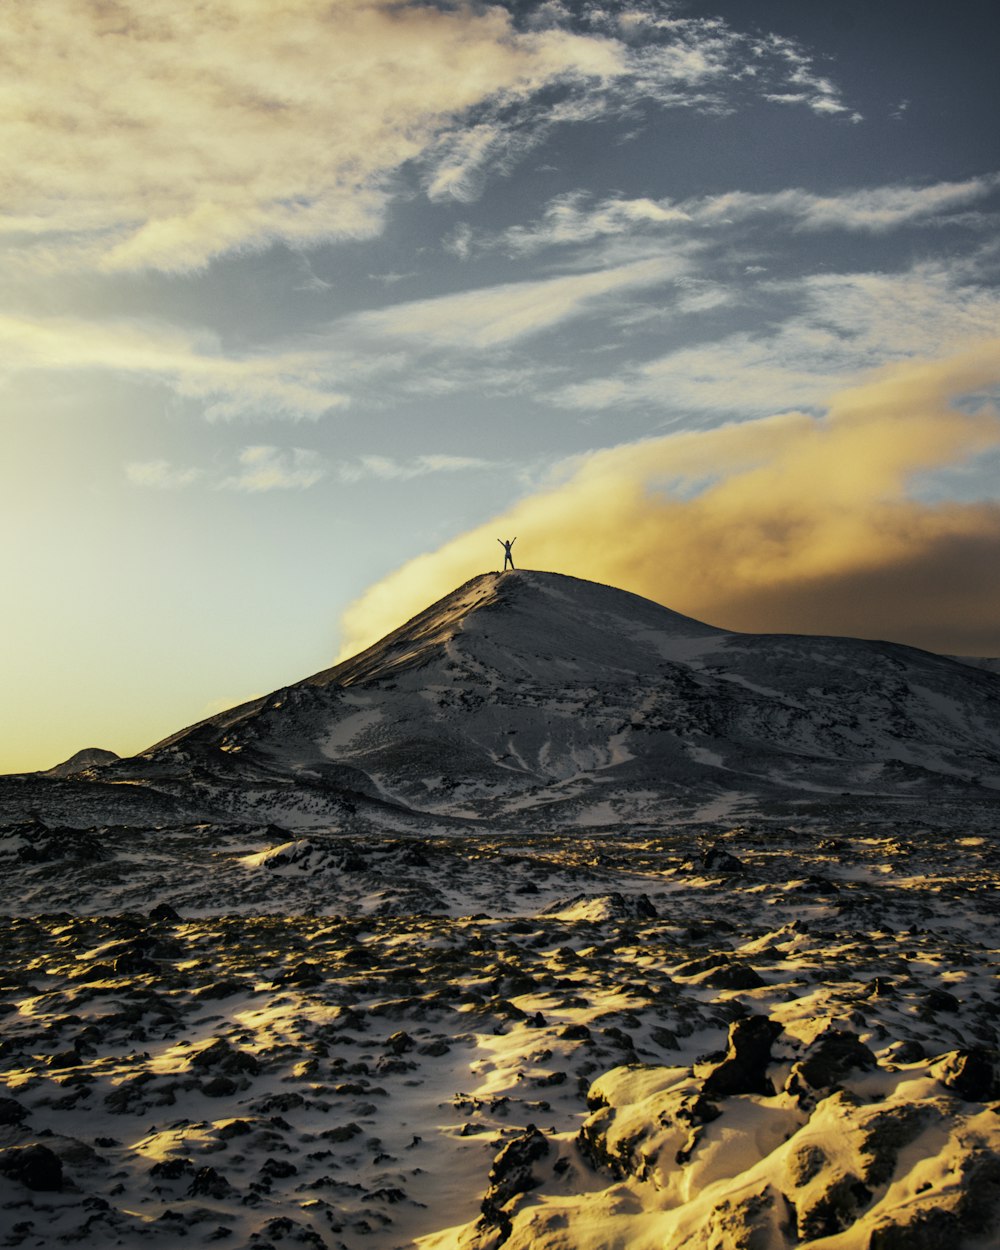 pessoa em pé no topo da montanha coberta de neve durante o dia